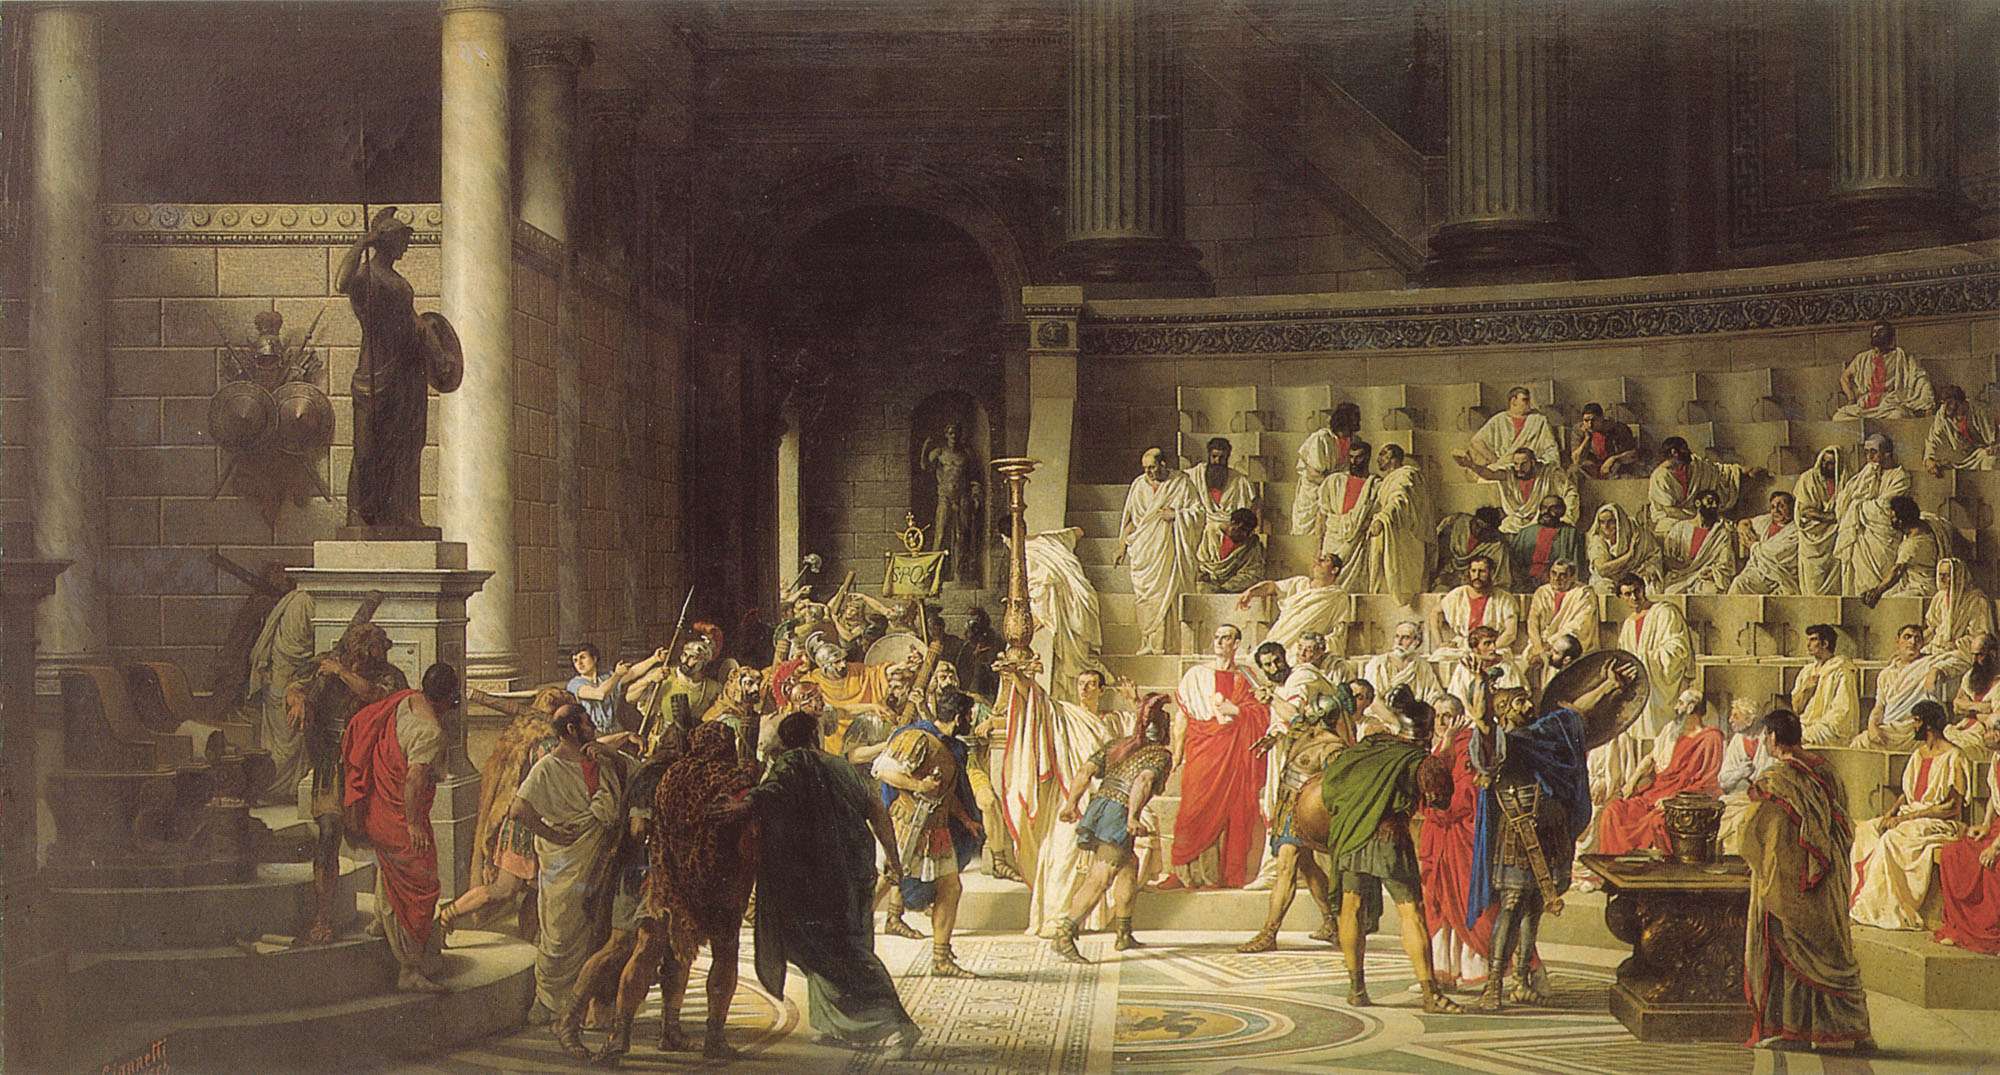 La republica Roma: Republica Romana, Definición y Historia